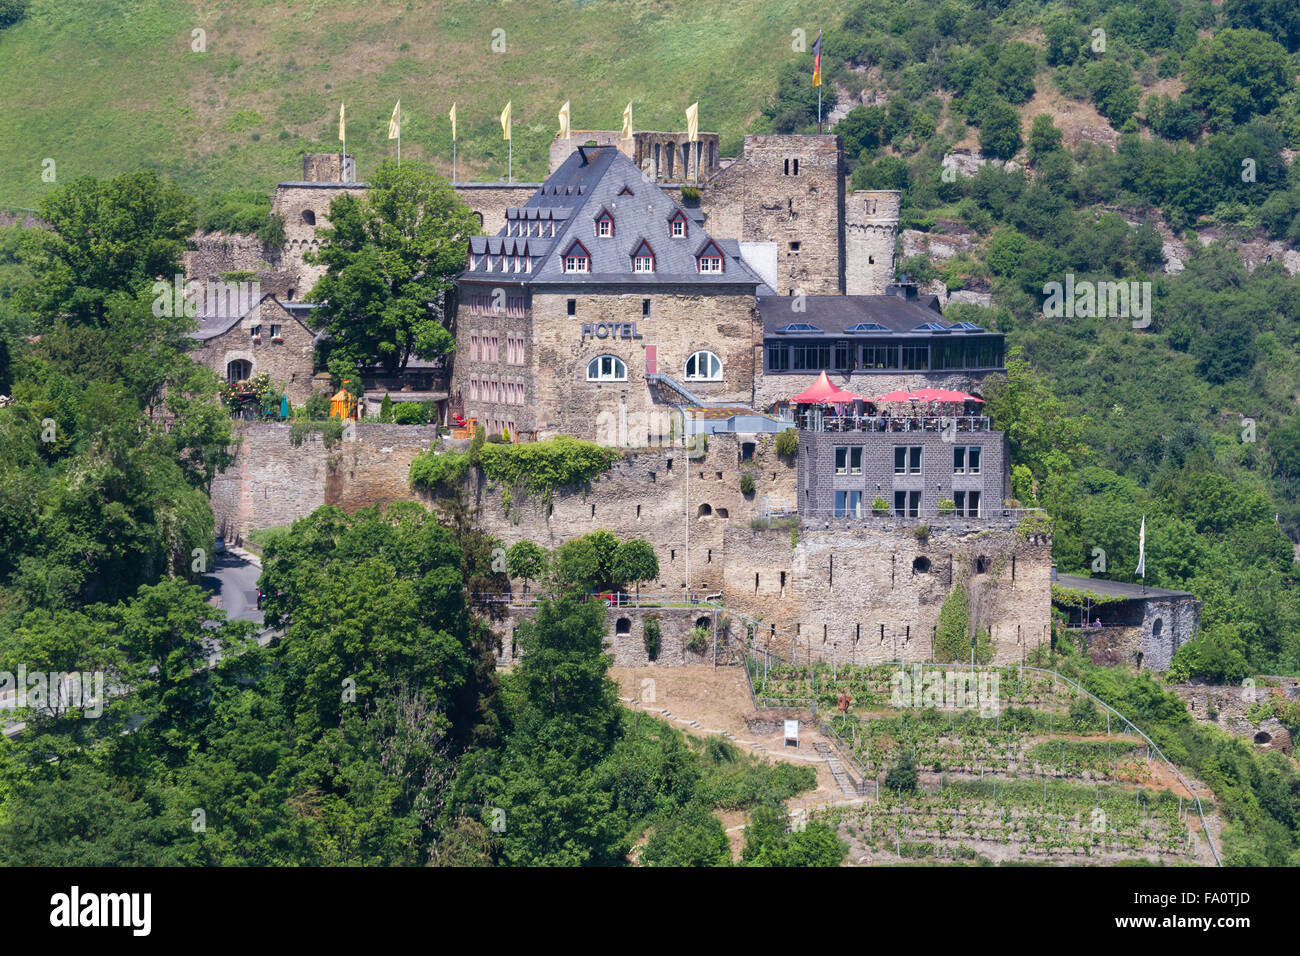 Castle Rheinfels near St. Goar, Upper Middle Rhine Valley, Germany Stock Photo